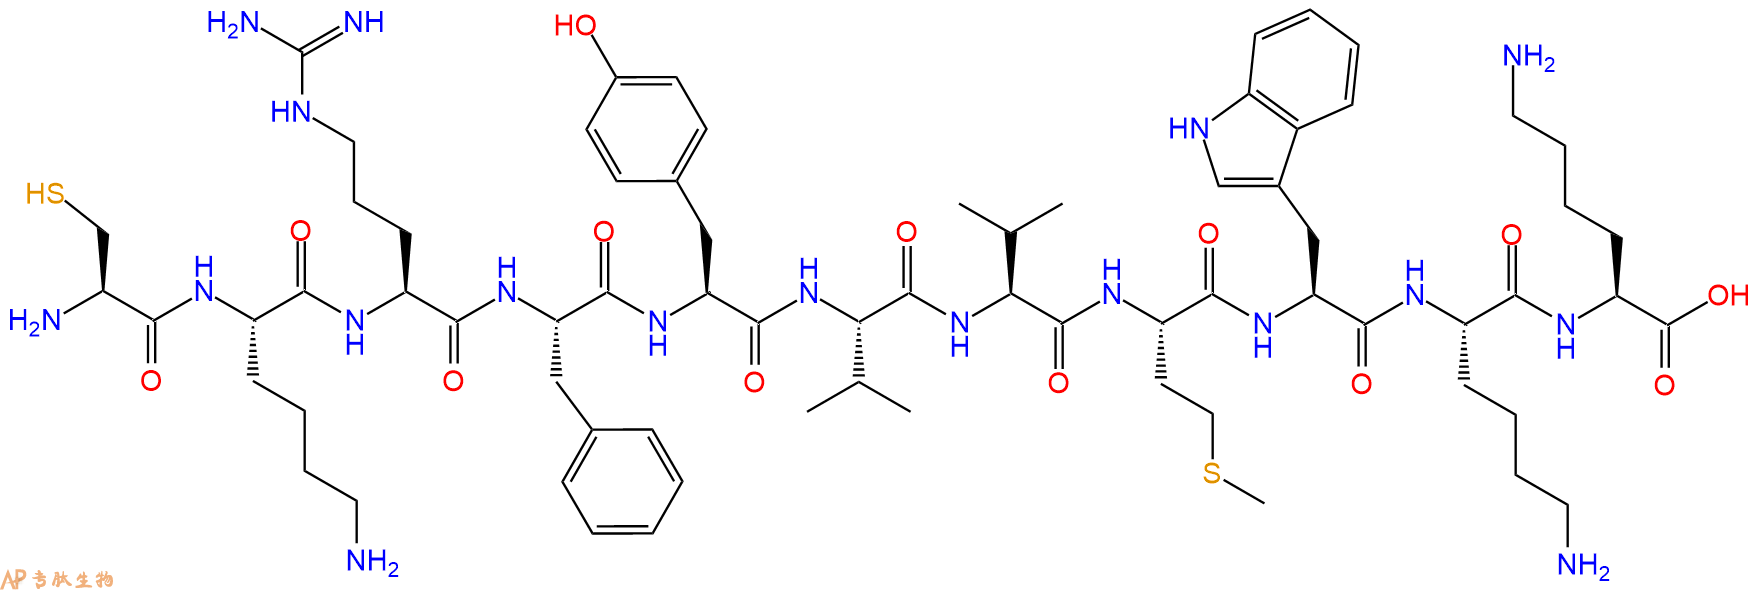 专肽生物产品血小板反应蛋白-I（TS-I）细胞结合结构域：Cys-[Lys1015, 1024]-Thrombospondin-1(1015-1024), human